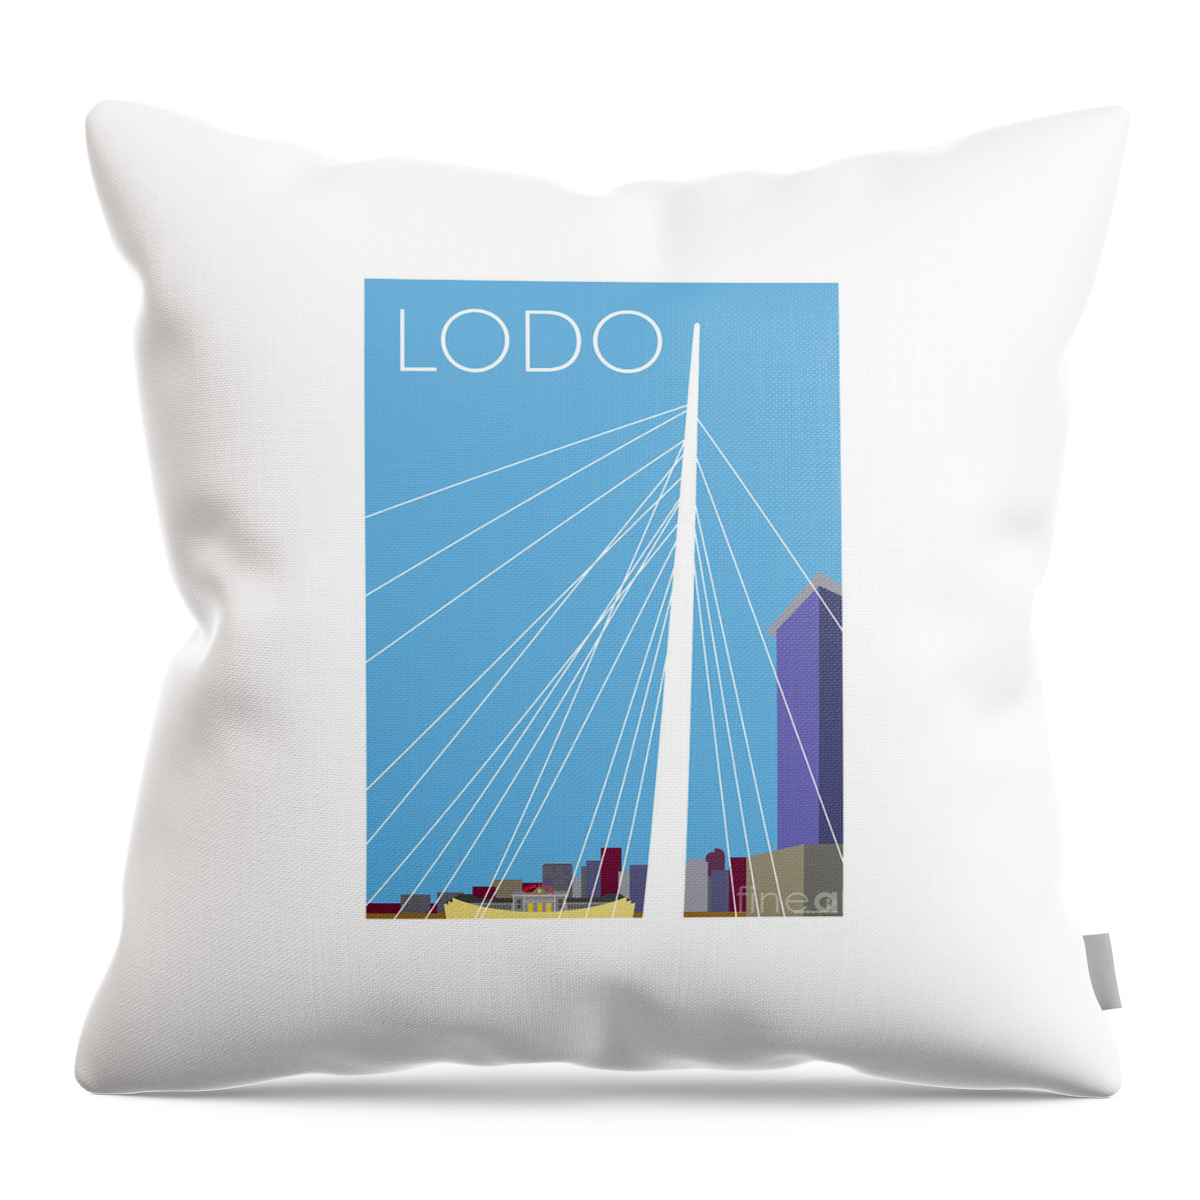 Denver Throw Pillow featuring the digital art LODO/Blue by Sam Brennan